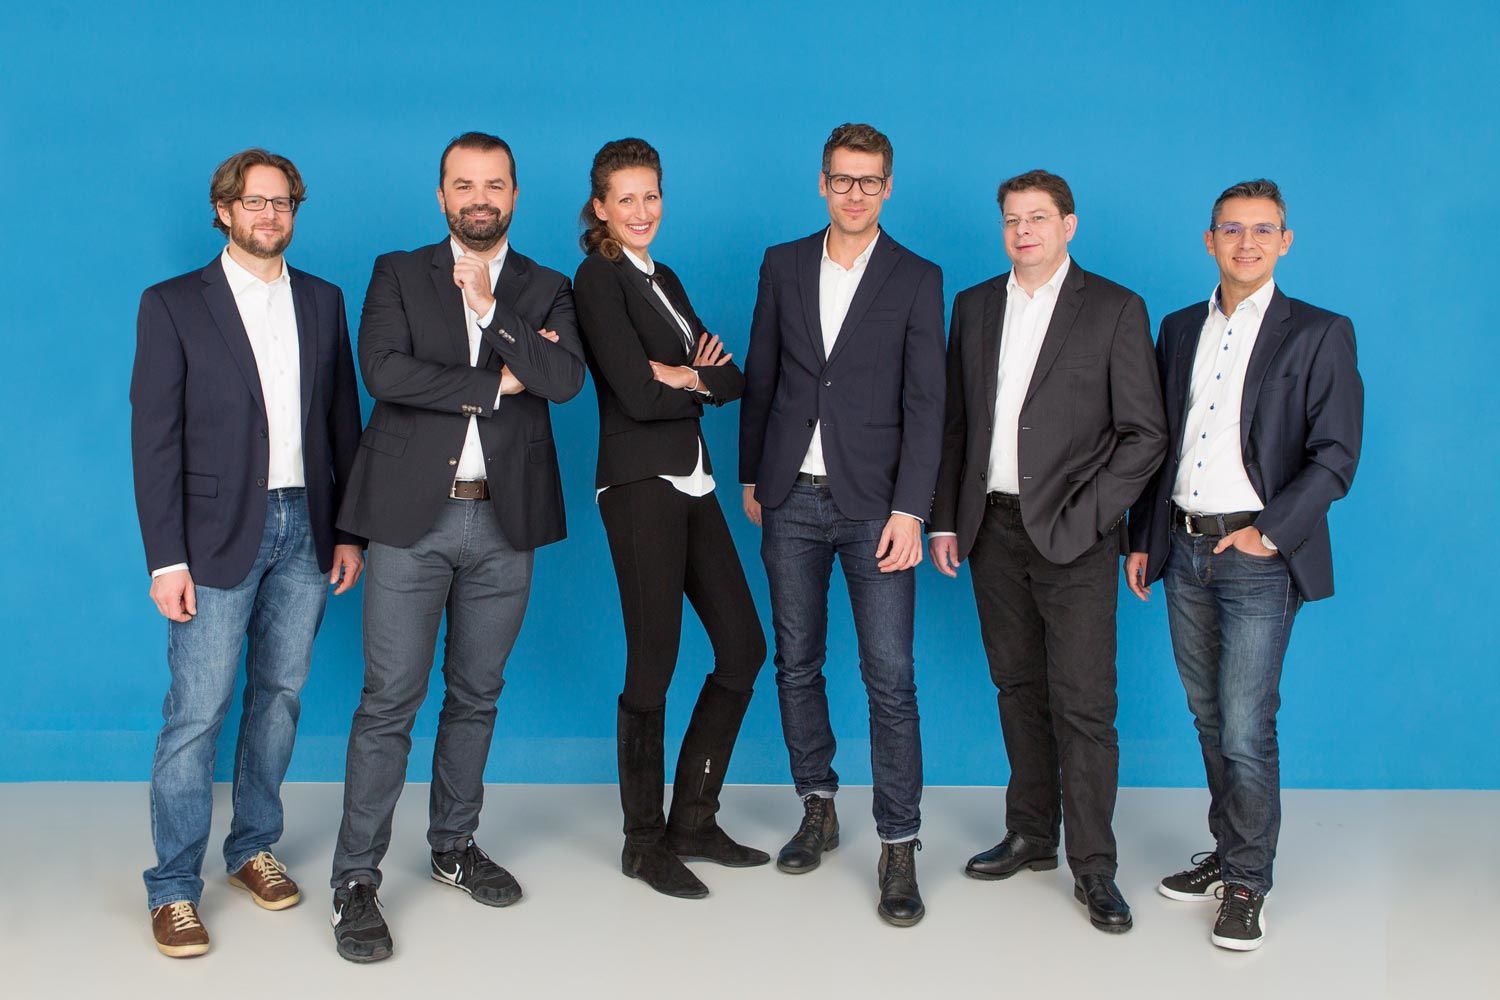 Growth Ninjas Team: Scharler, Greunz, Steindl, Sporrer, Eichmeyer, Kainz